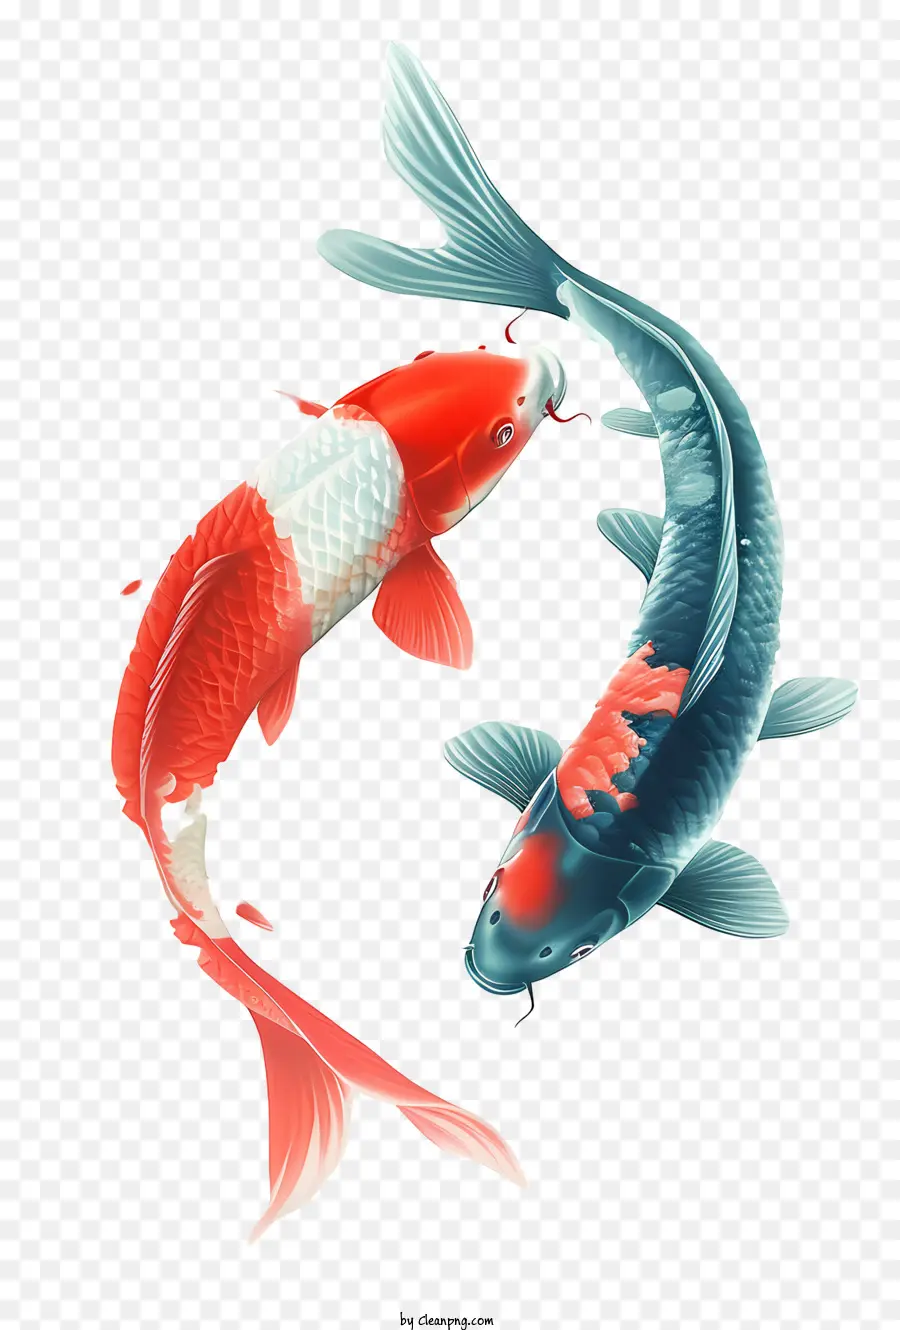 koi fish red and white koi swimming water fish